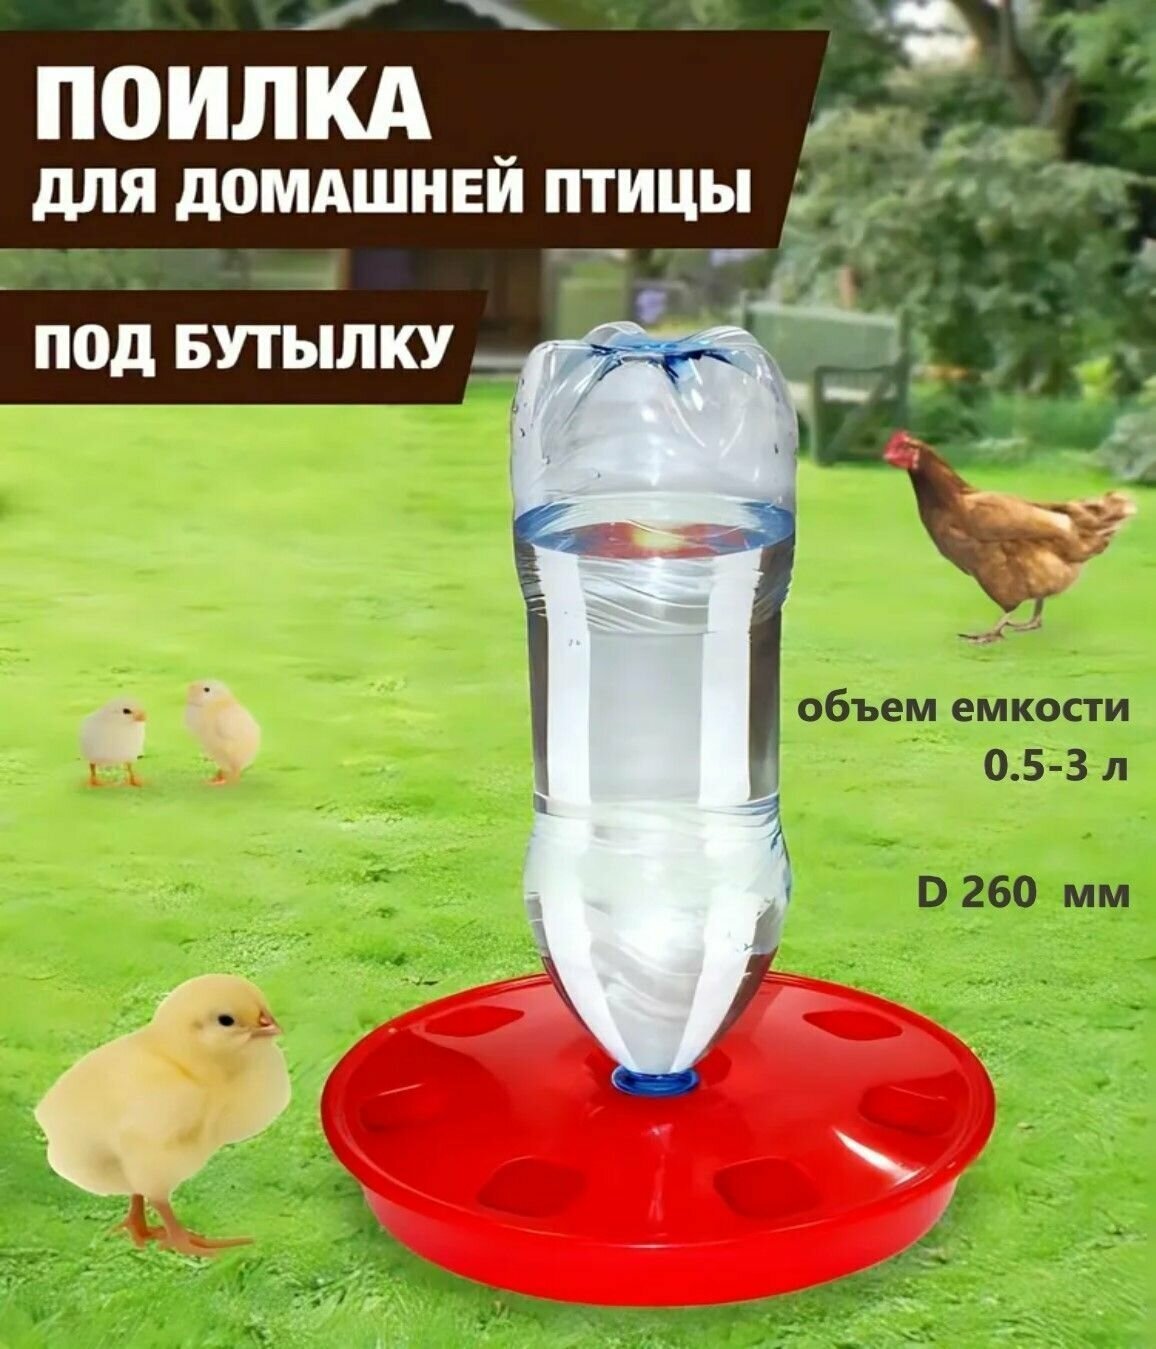 Поилка для домашней птицы под бутылку (d 260мм) объемом от 0,5 до 3 л, для выращивания домашних птиц: кур несушек, индеек, цесарок, цыплят, уток, гусей - фотография № 13